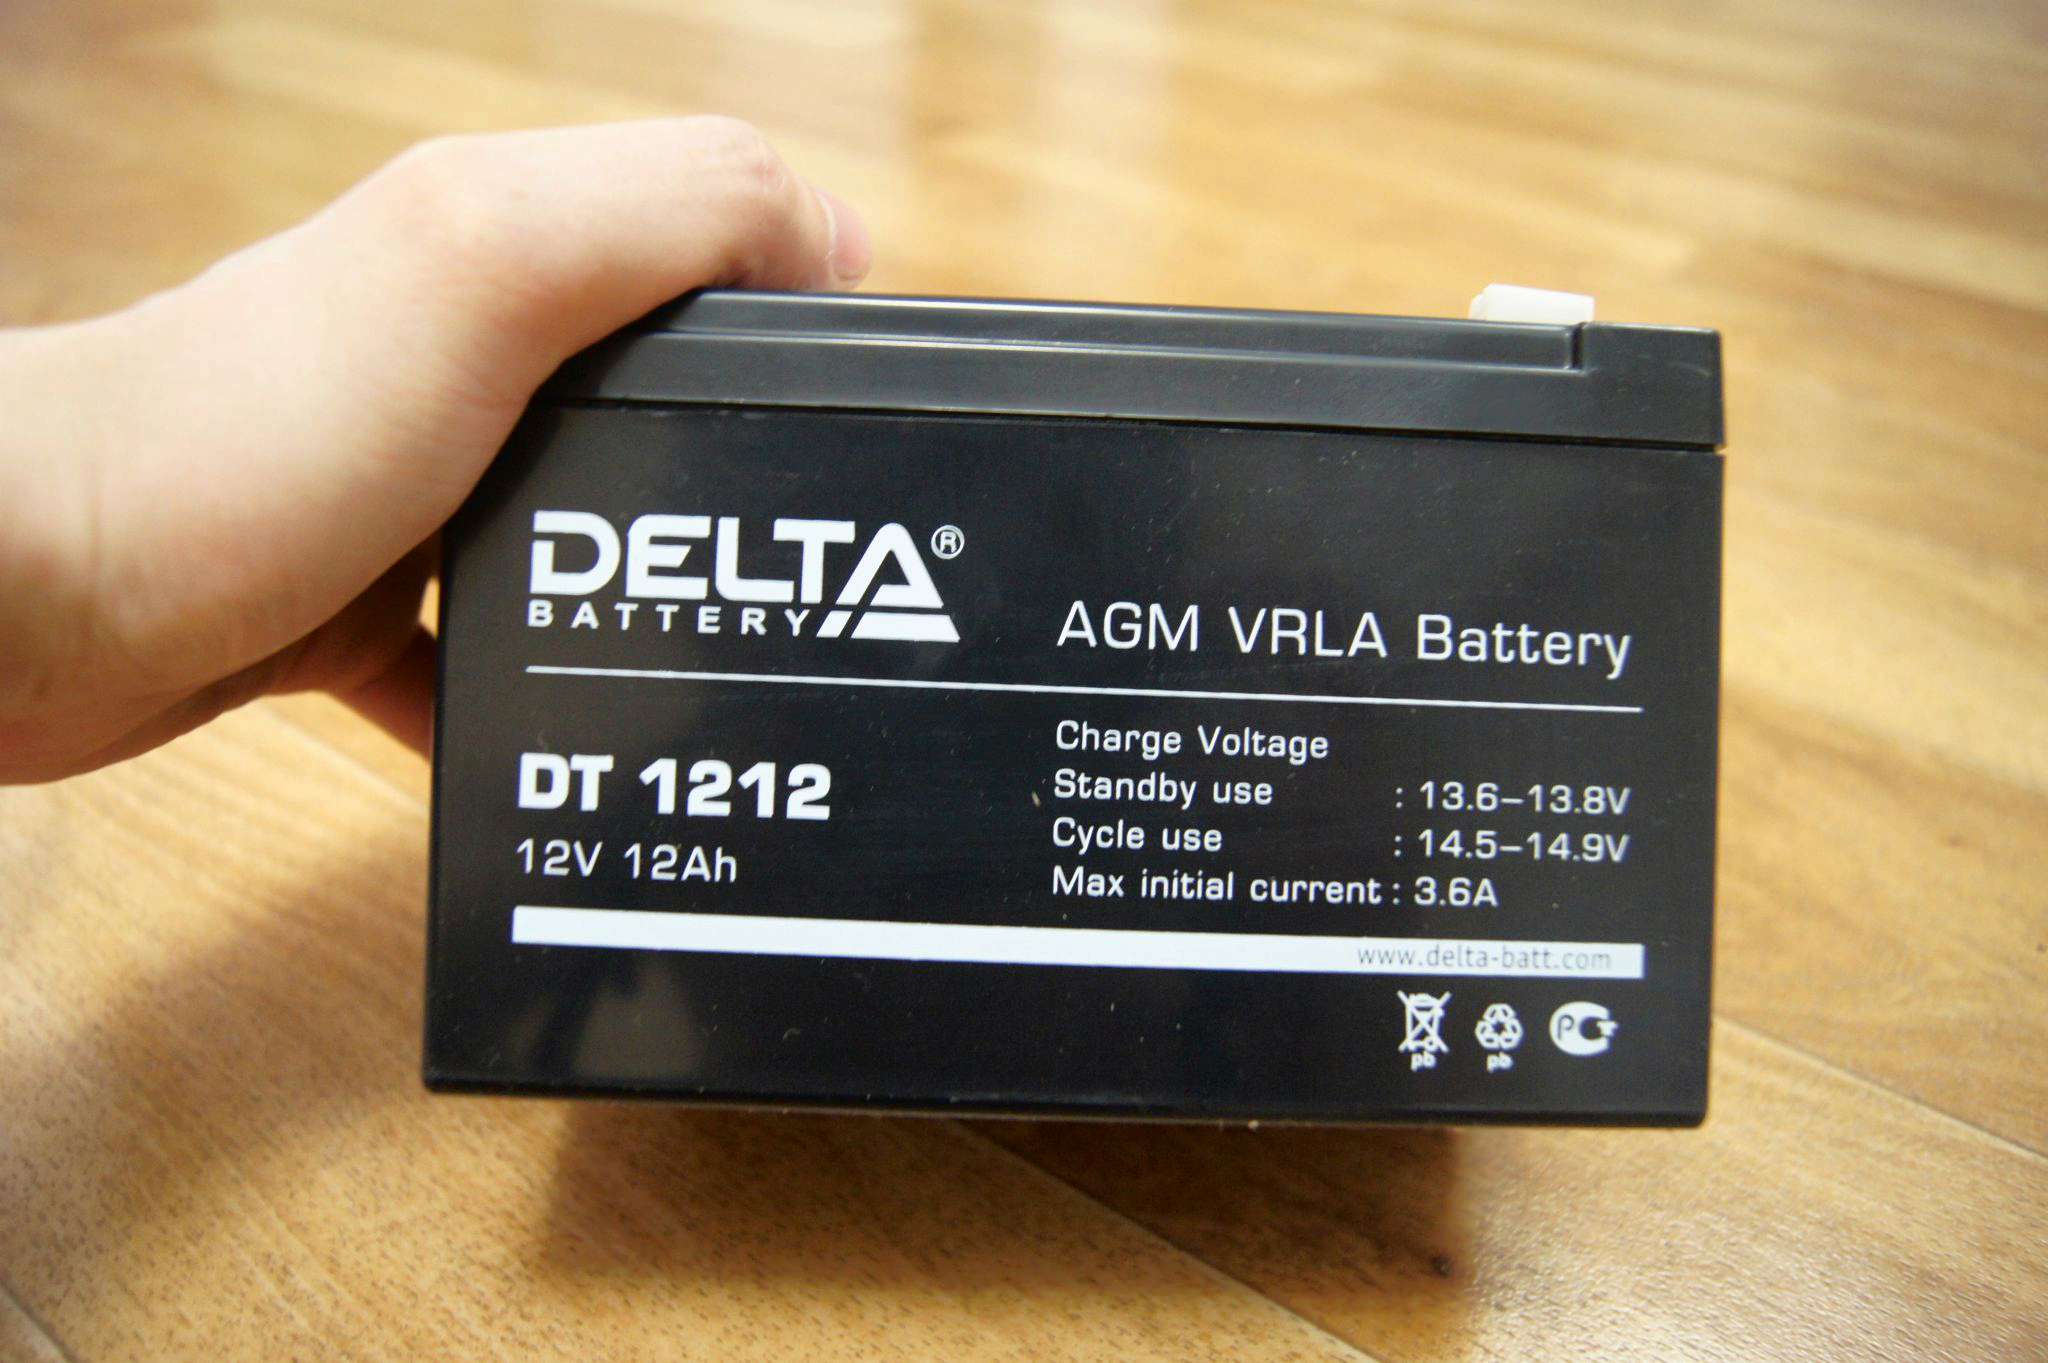 Voltage 12v. Аккумулятор Delta DT 1212. DT 1212 Delta аккумуляторная батарея. Аккумуляторная батарея Delta DT 1212 12 ампер. Delta Battery AGM VRLA 12 V.